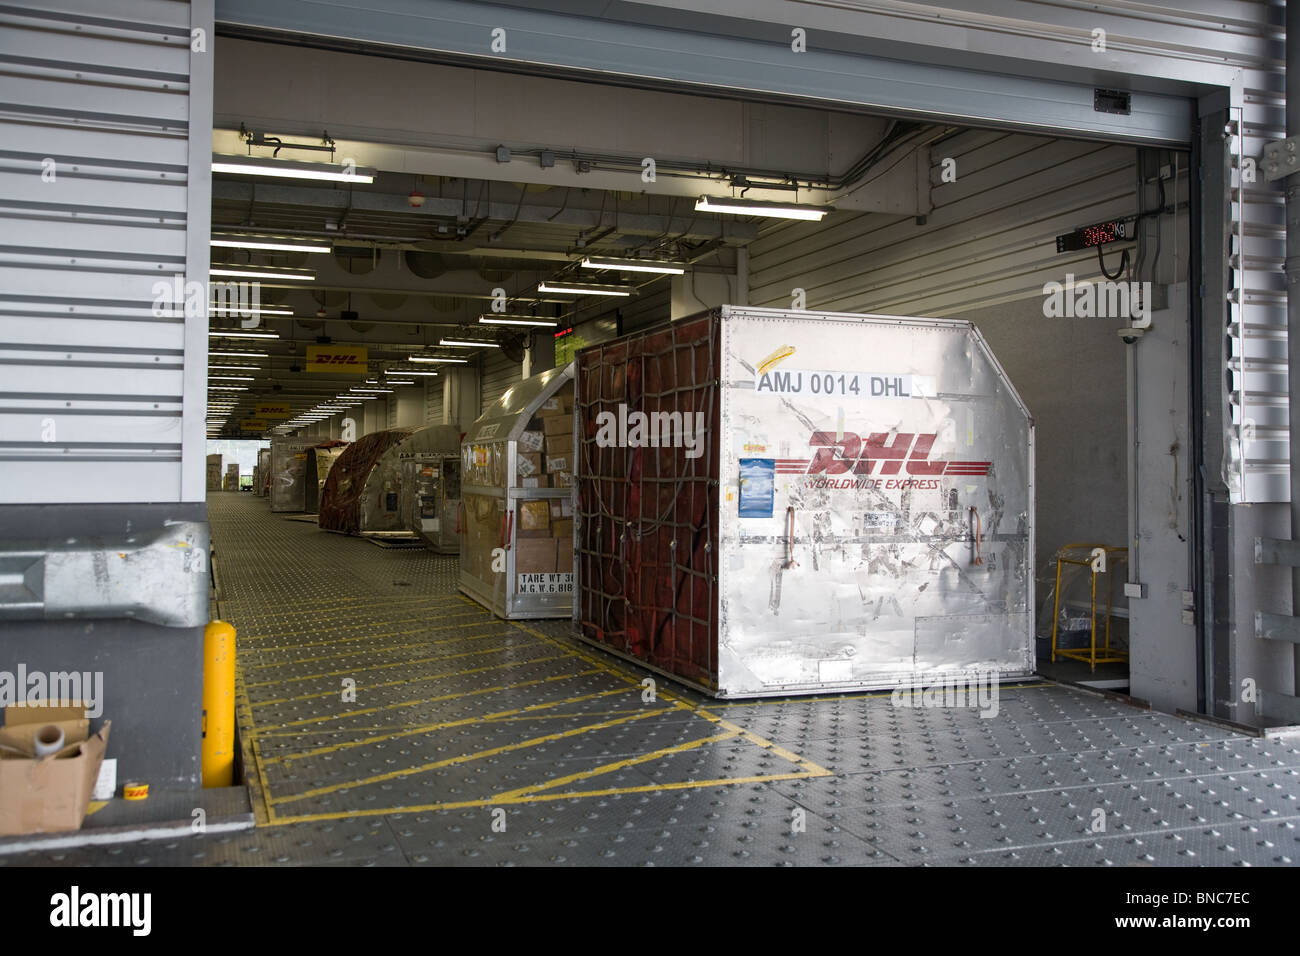 Centro logístico de DHL almacén Hong Kong Foto de stock